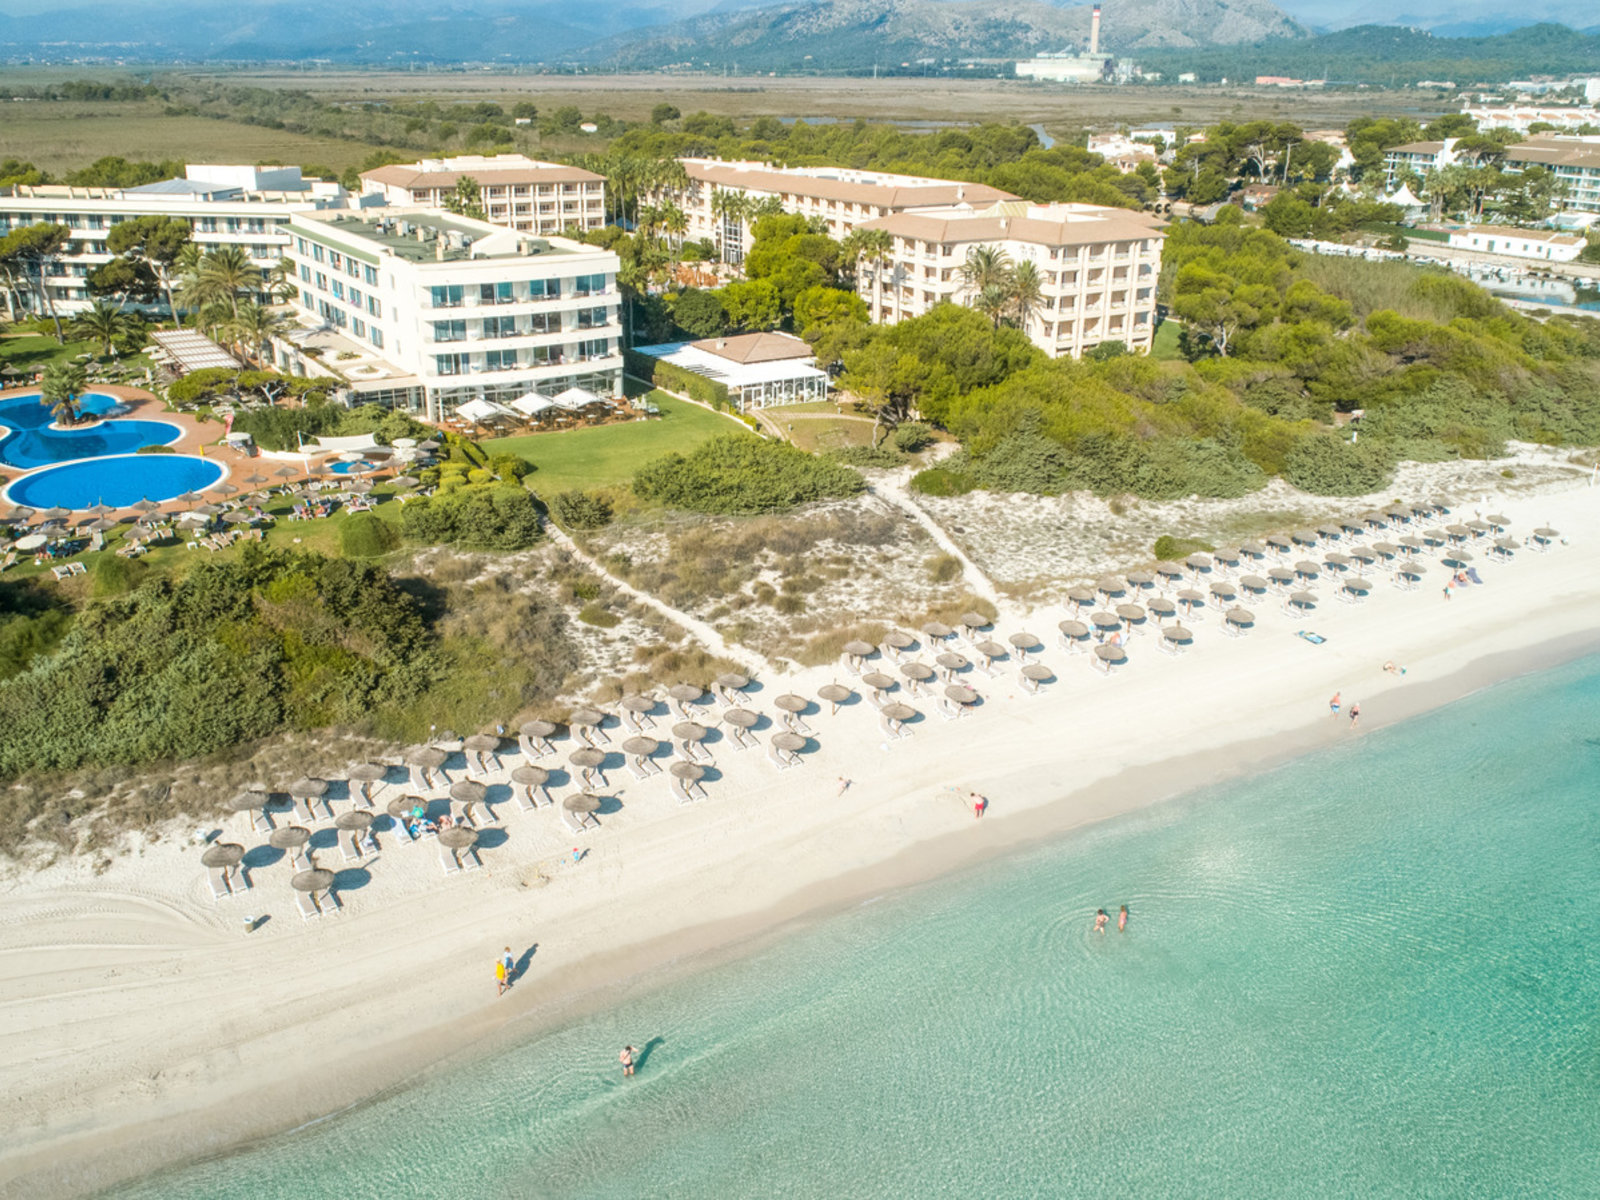 Hotel Grupotel Natura Playa in Bucht von Alcudia günstig buchen bei 